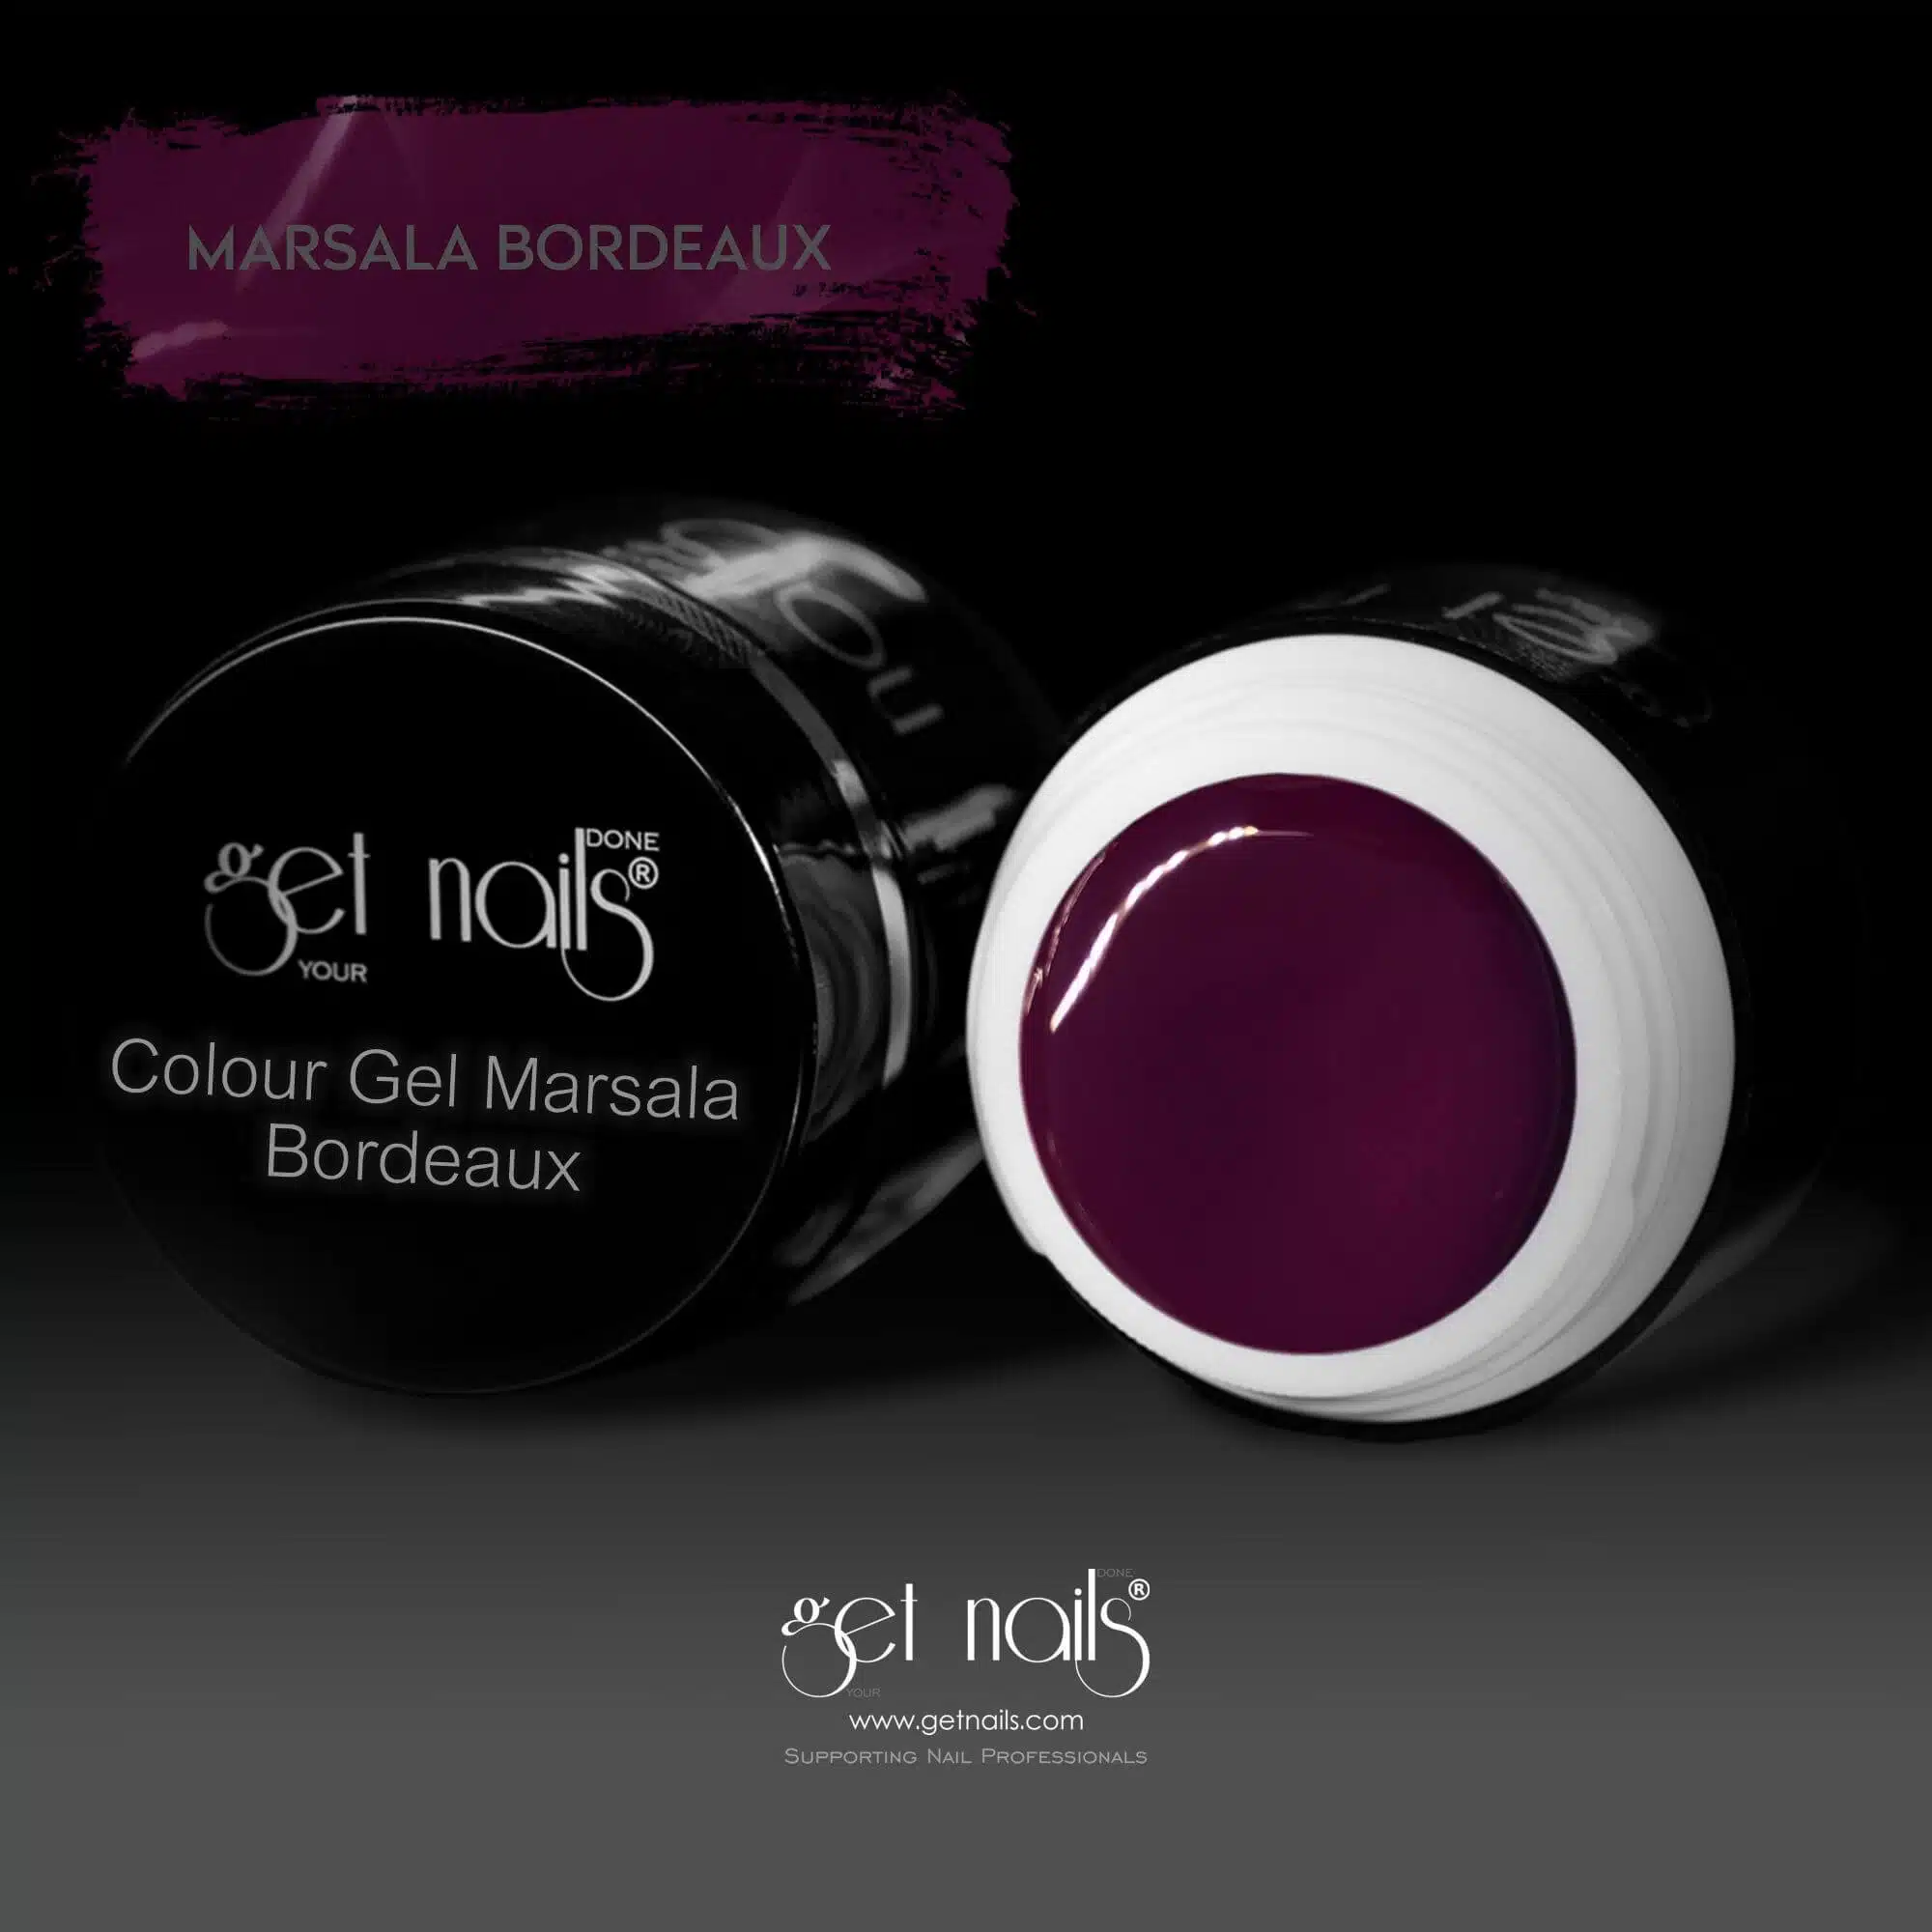 Get Nails Austria - Gel colorato Marsala Bordeaux 5g